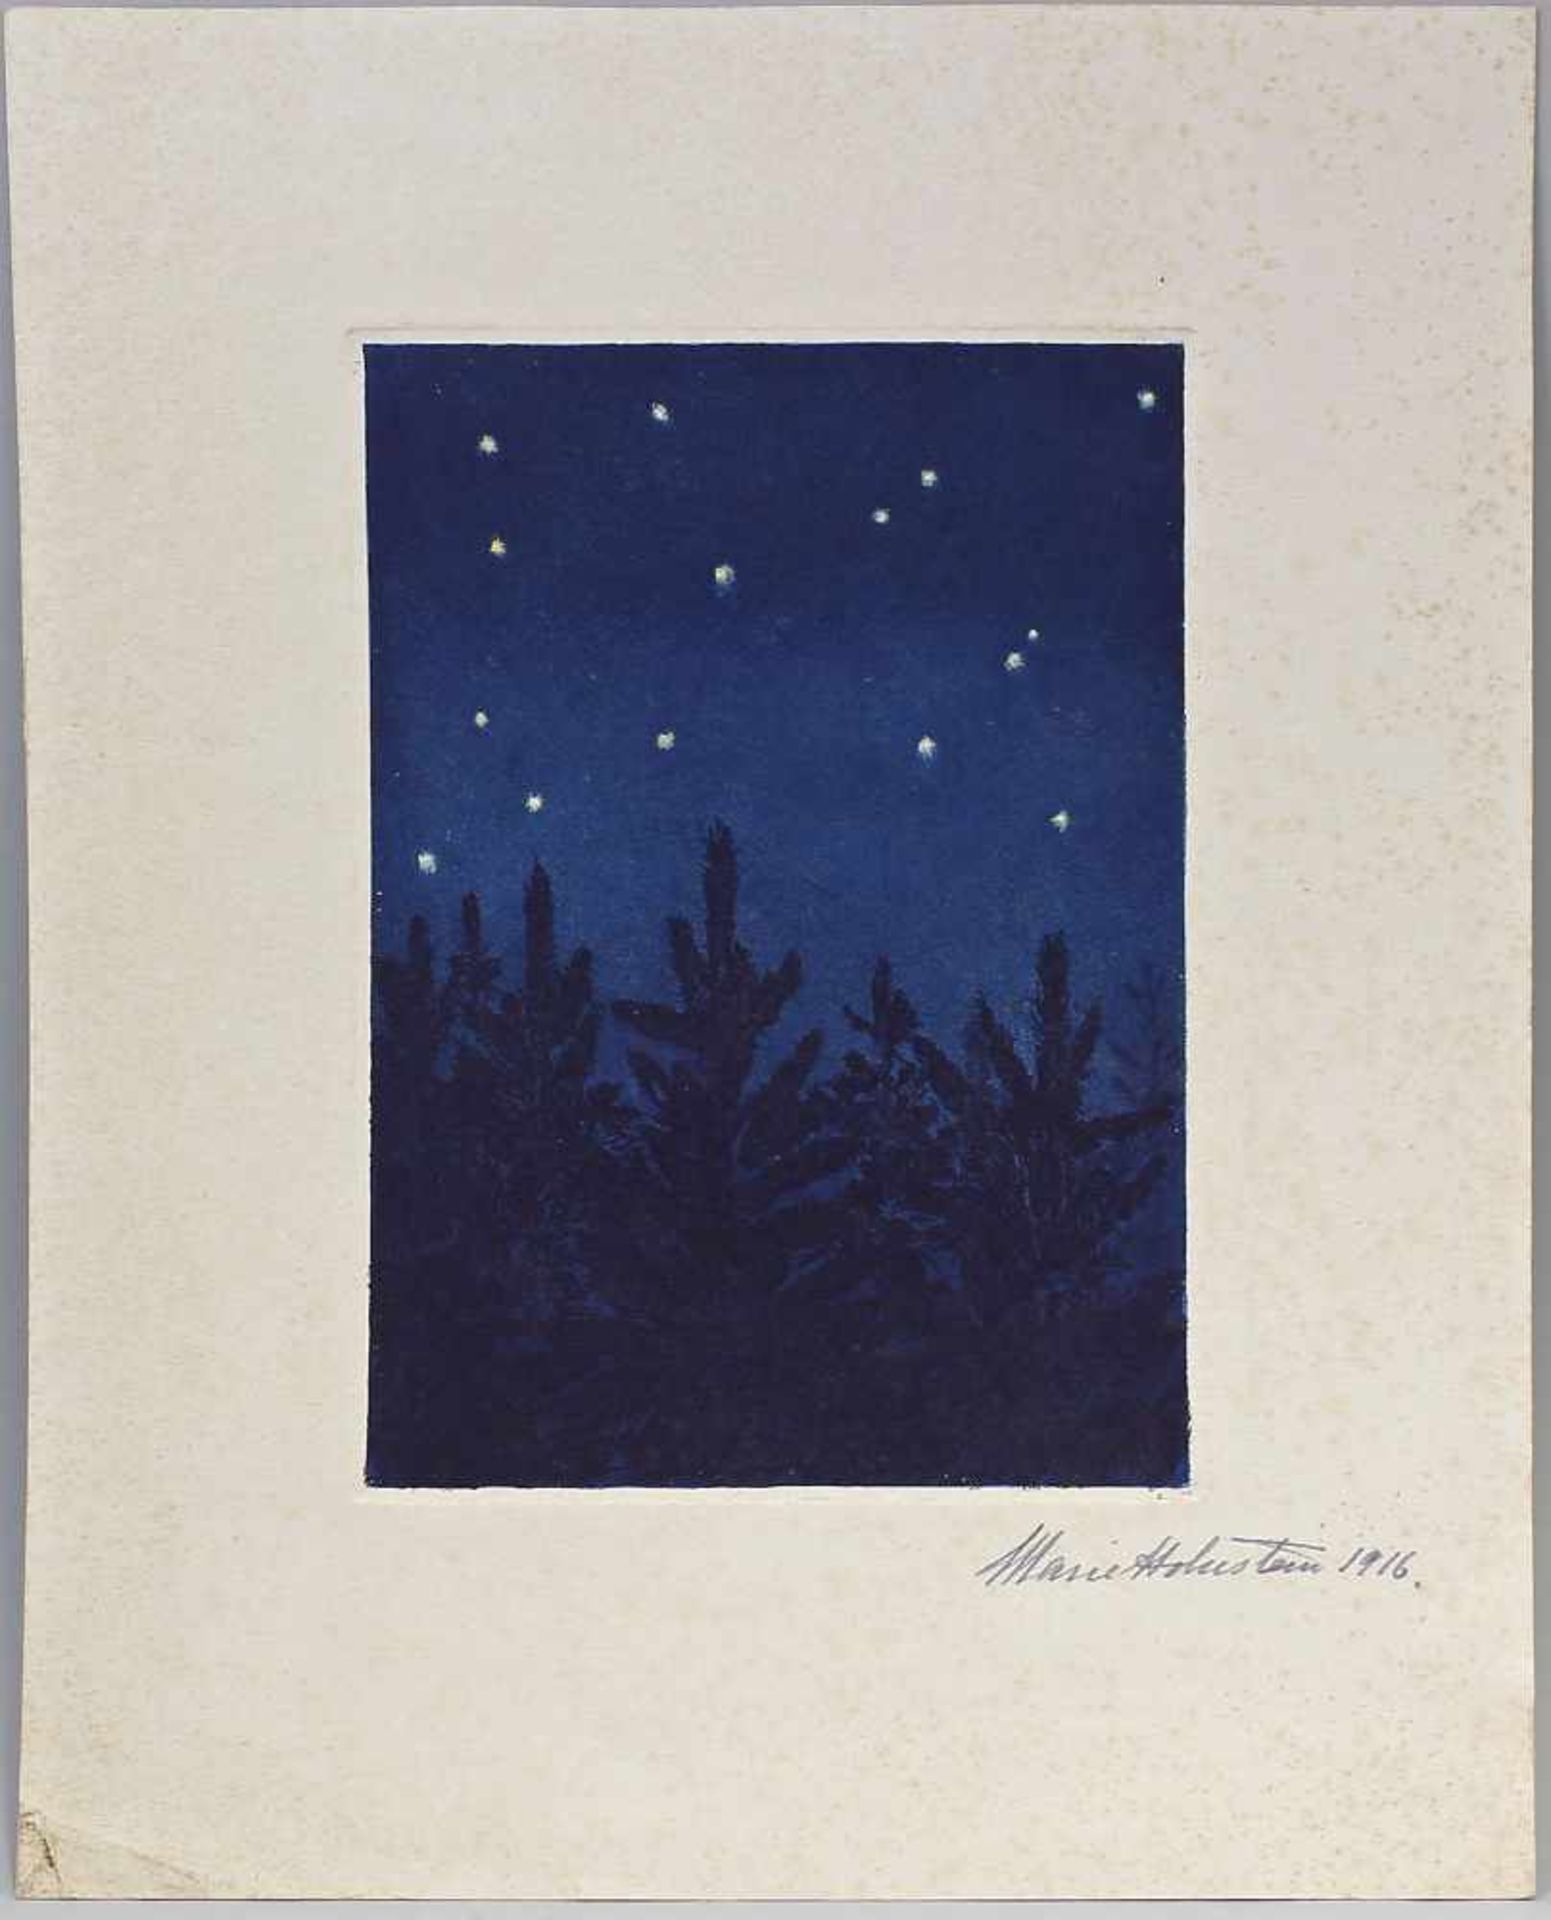 Unbekannt, Nachthimmel Aquatinta/Ätzradierung, re. u. von Hand bez. "Marie Hohnstein 1916", Blatt